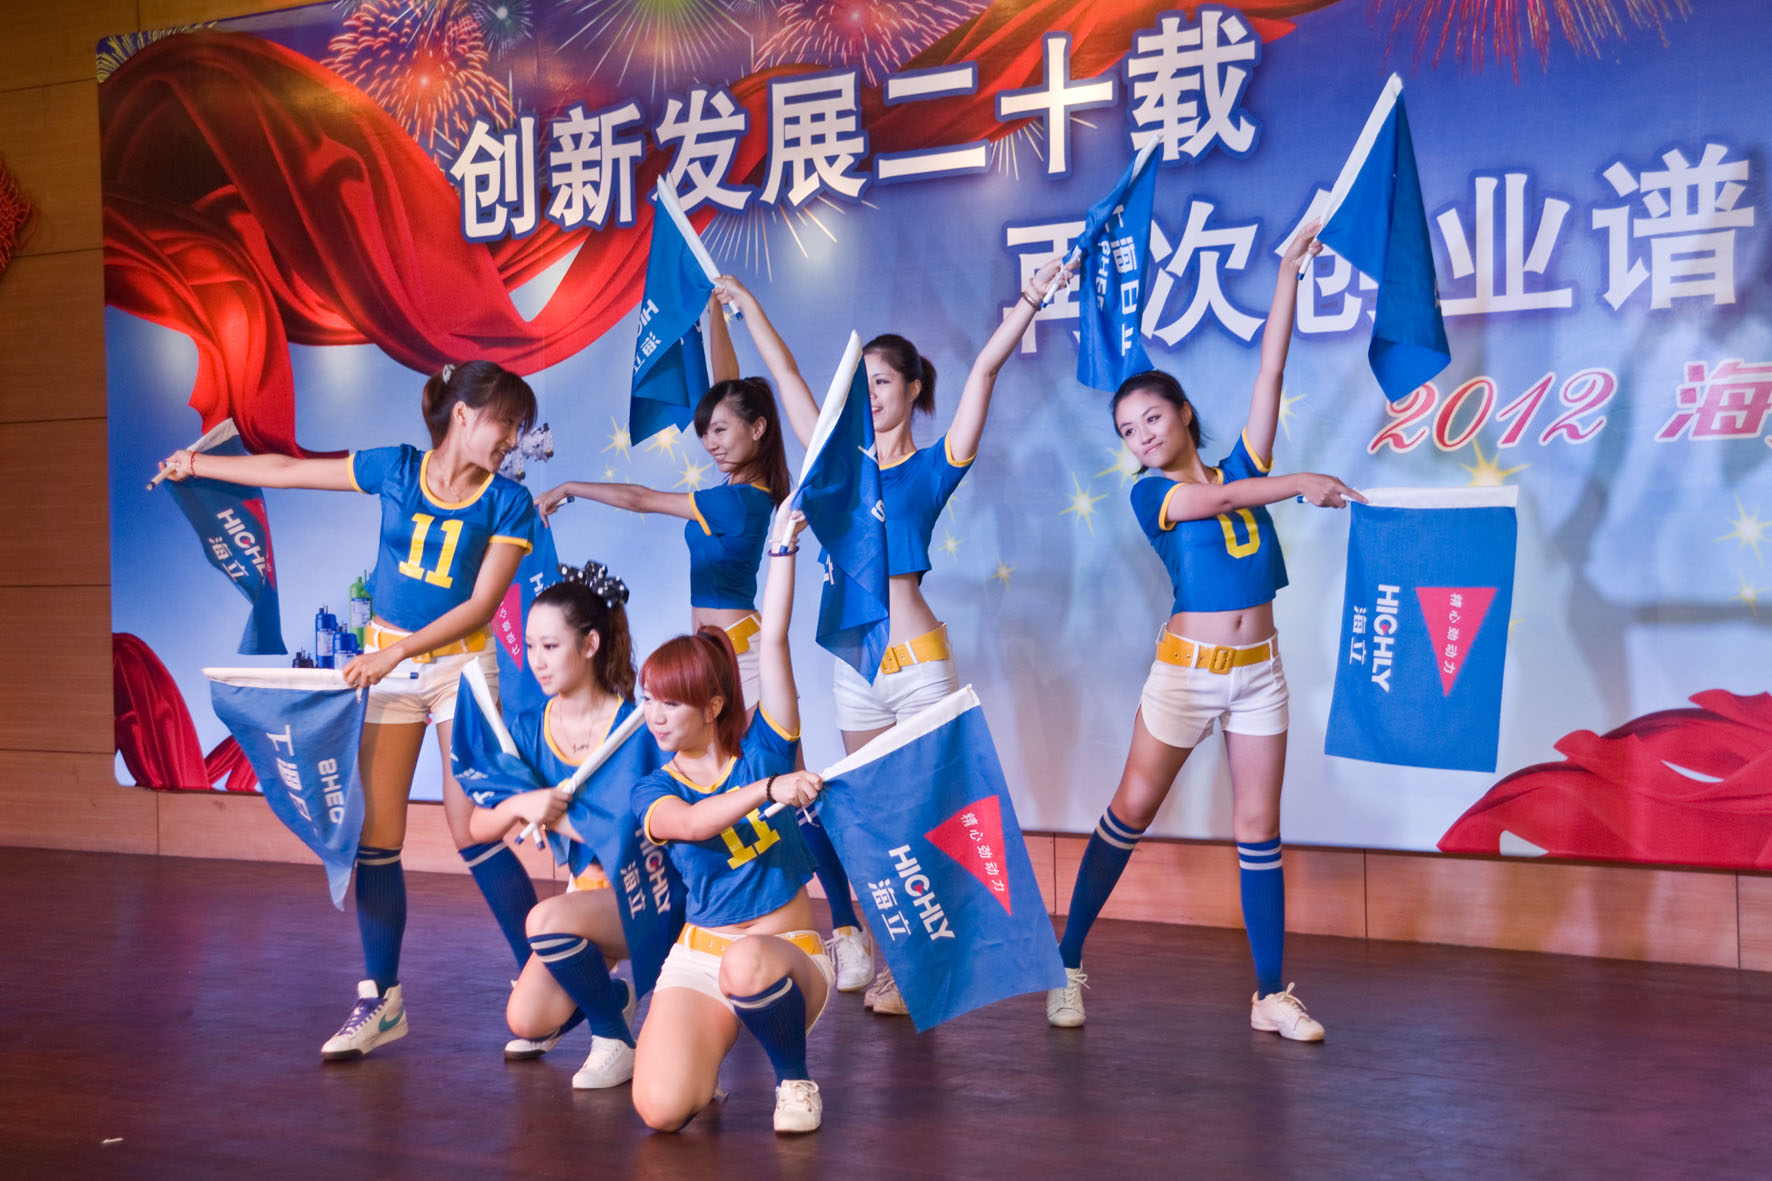 上海日立举行2012年度“海立之夏”晚会